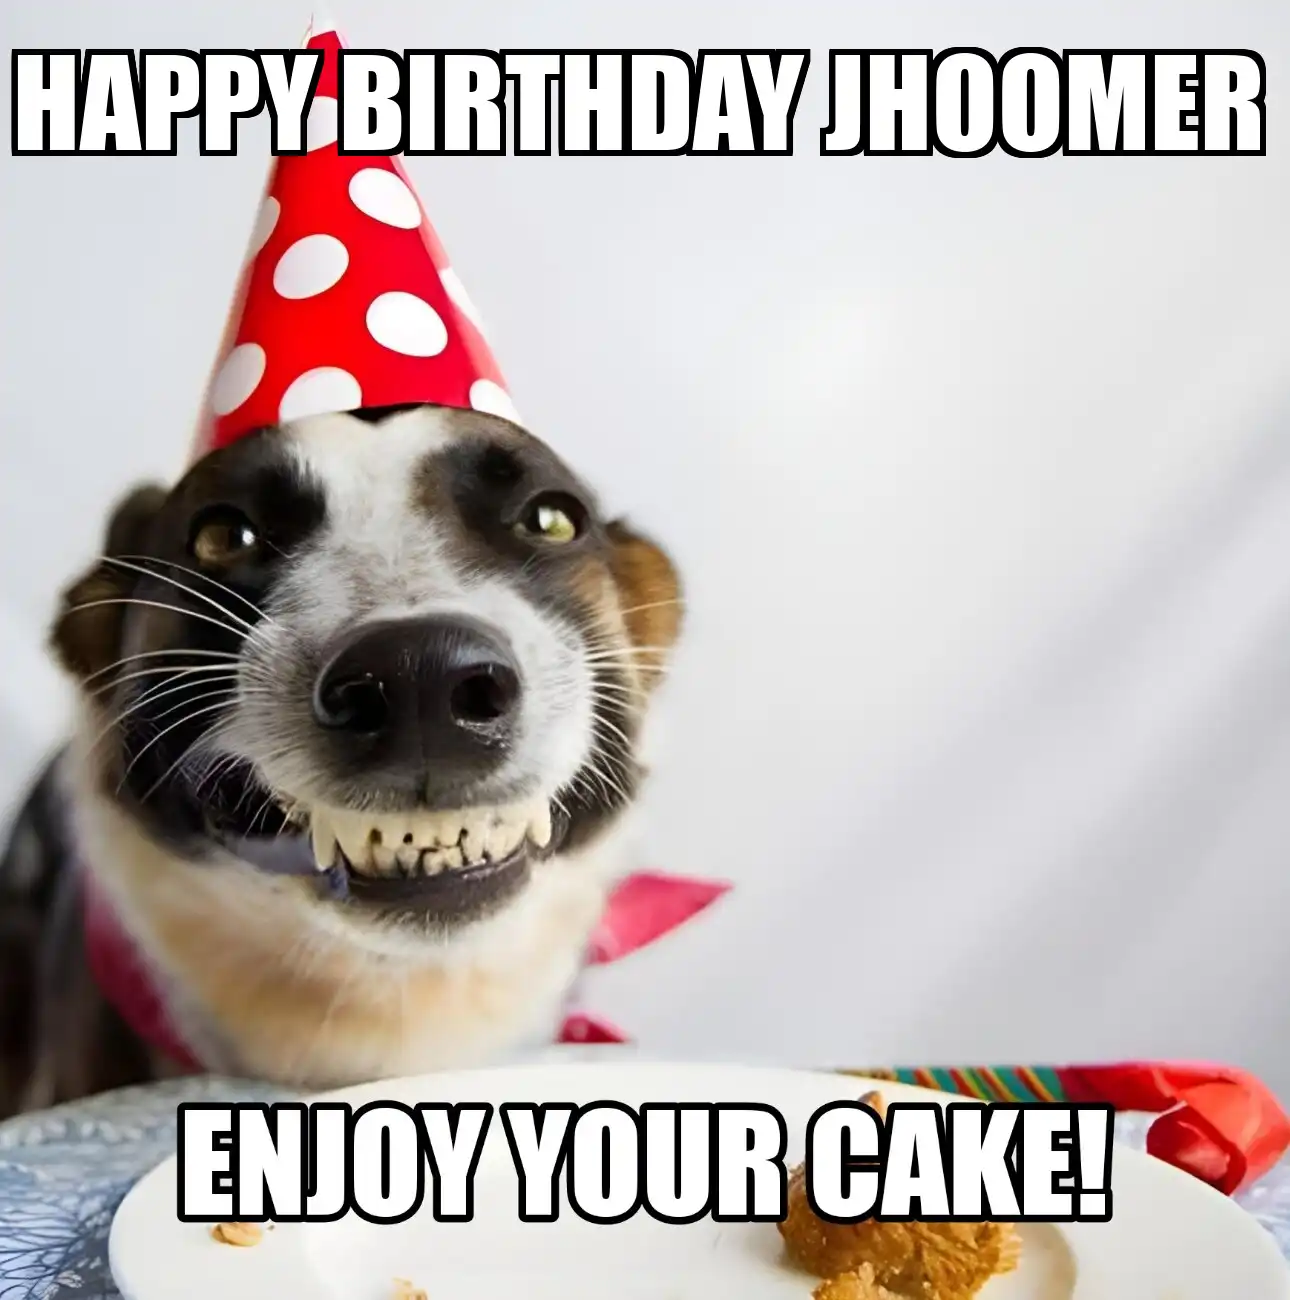 Happy Birthday Jhoomer Enjoy Your Cake Dog Meme